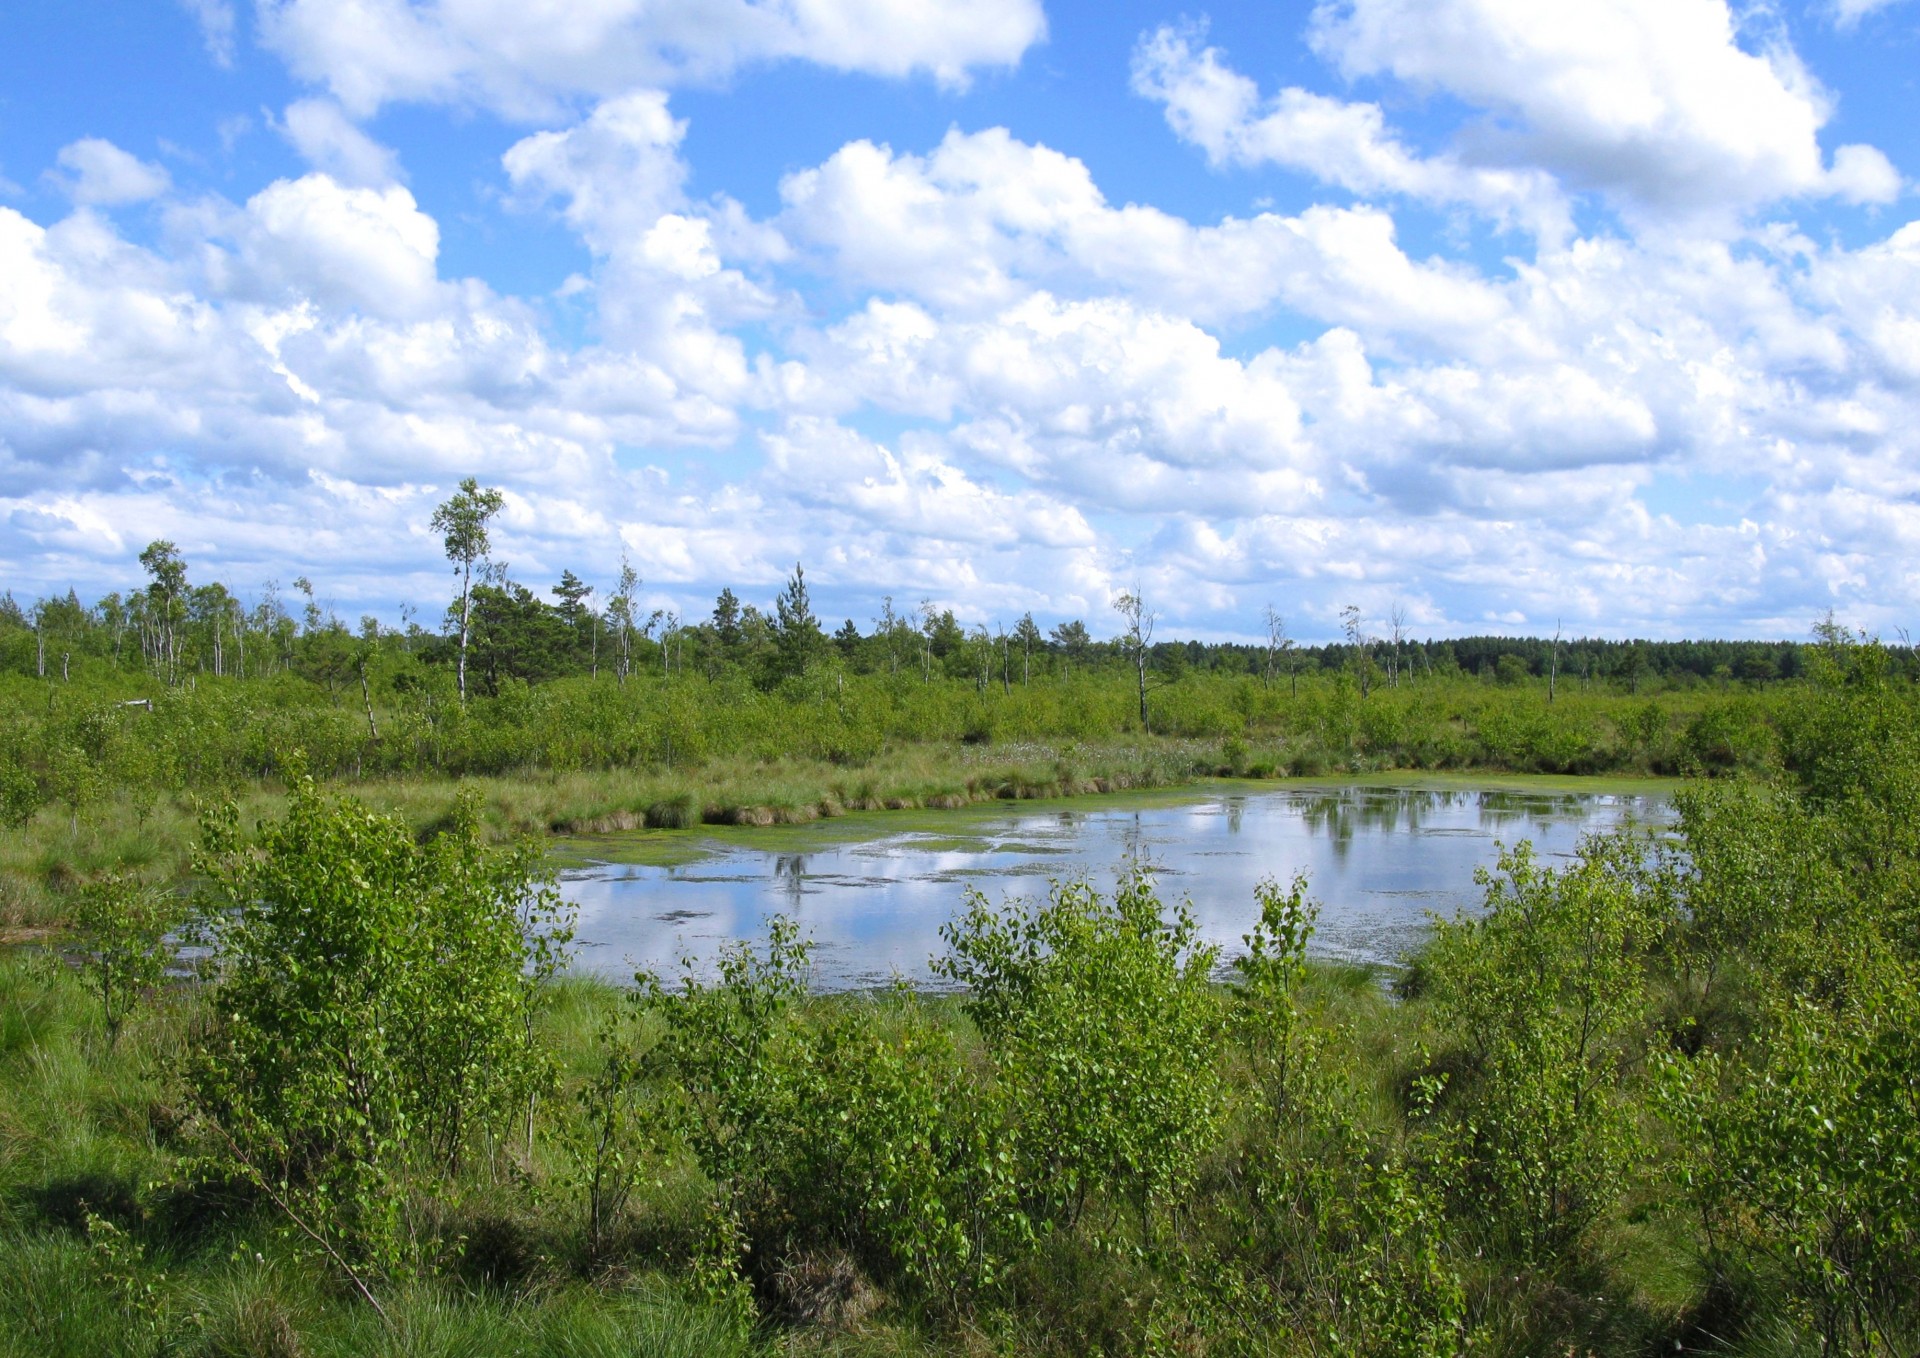 Fot.: Rezerwat przyrody Bielawa, źródło: Wikipedia, autor: Maciej Szczepańczyk